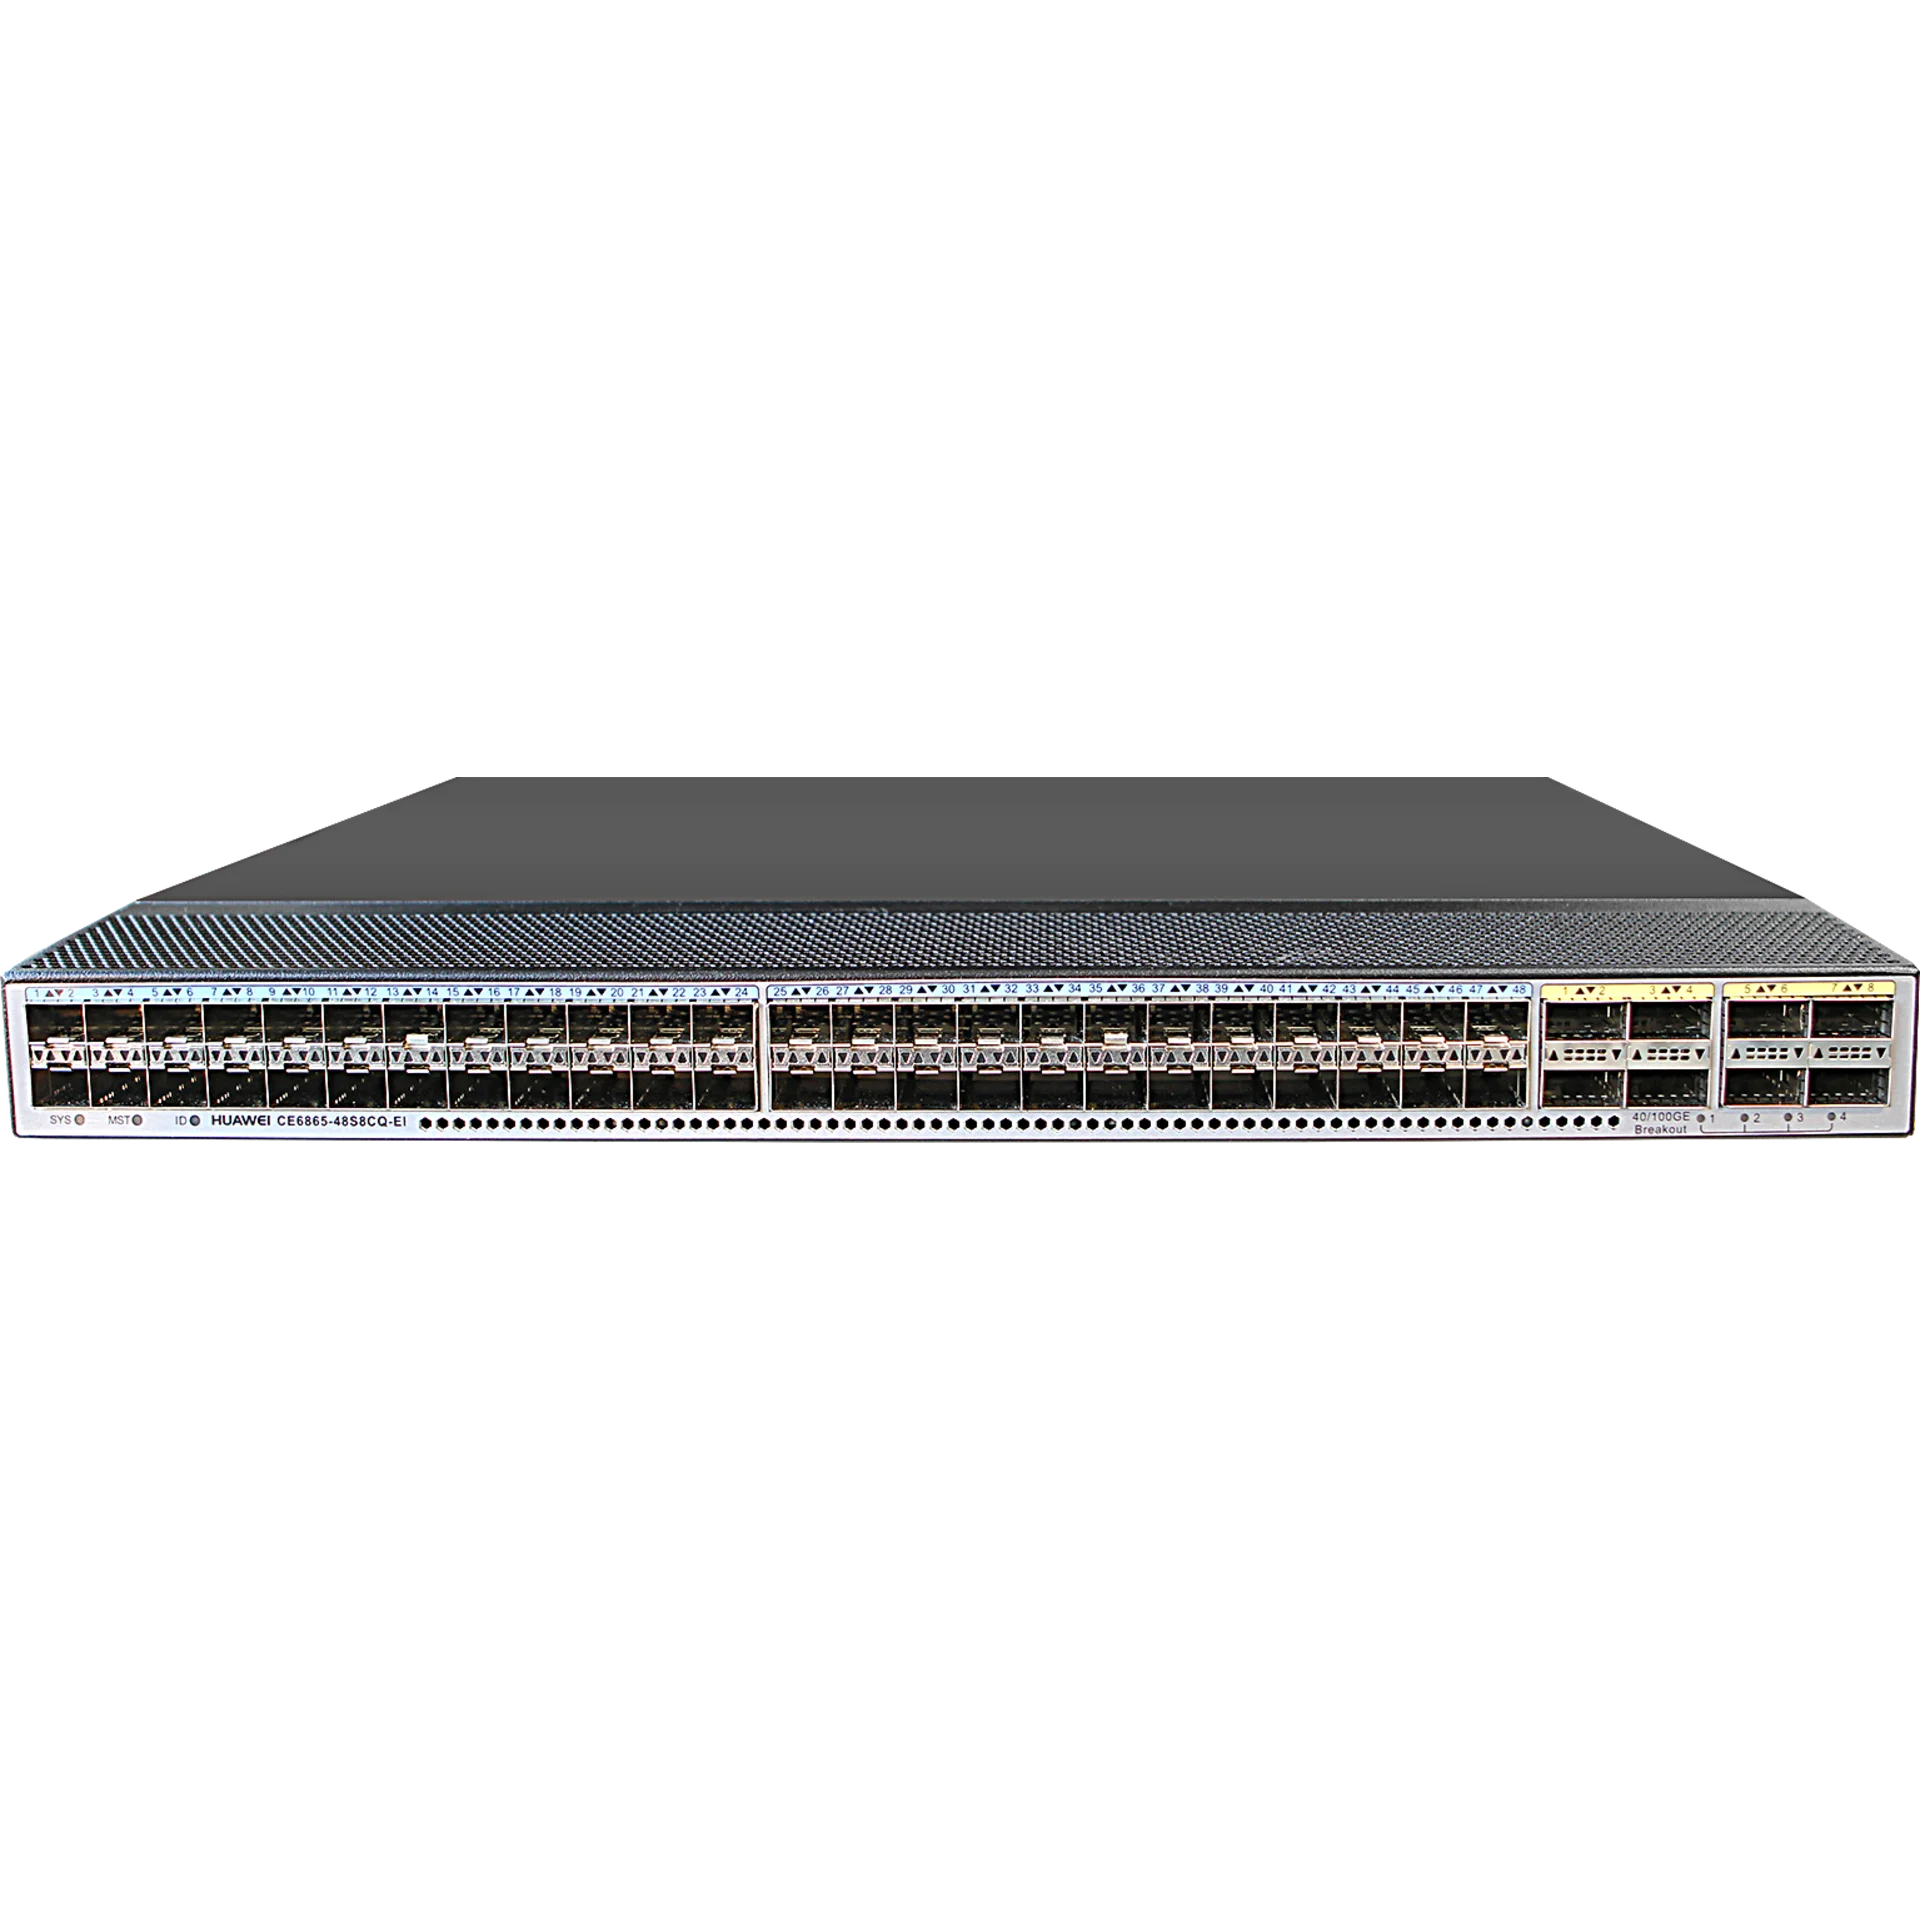 Huawei CE6865-48S8CQ-EI - Управляемый коммутато Layer3, 48 портов 1/10/25G SFP28, 8 портов 40/100 QSFP28, резервируемые модули вентиляторов и блоки питания port-side Intake. купить в Казани 	Коммутаторы CloudEngine для сетей ЦОД	Высокопроизводительные и надежные сетевые коммутаторы CloudEn